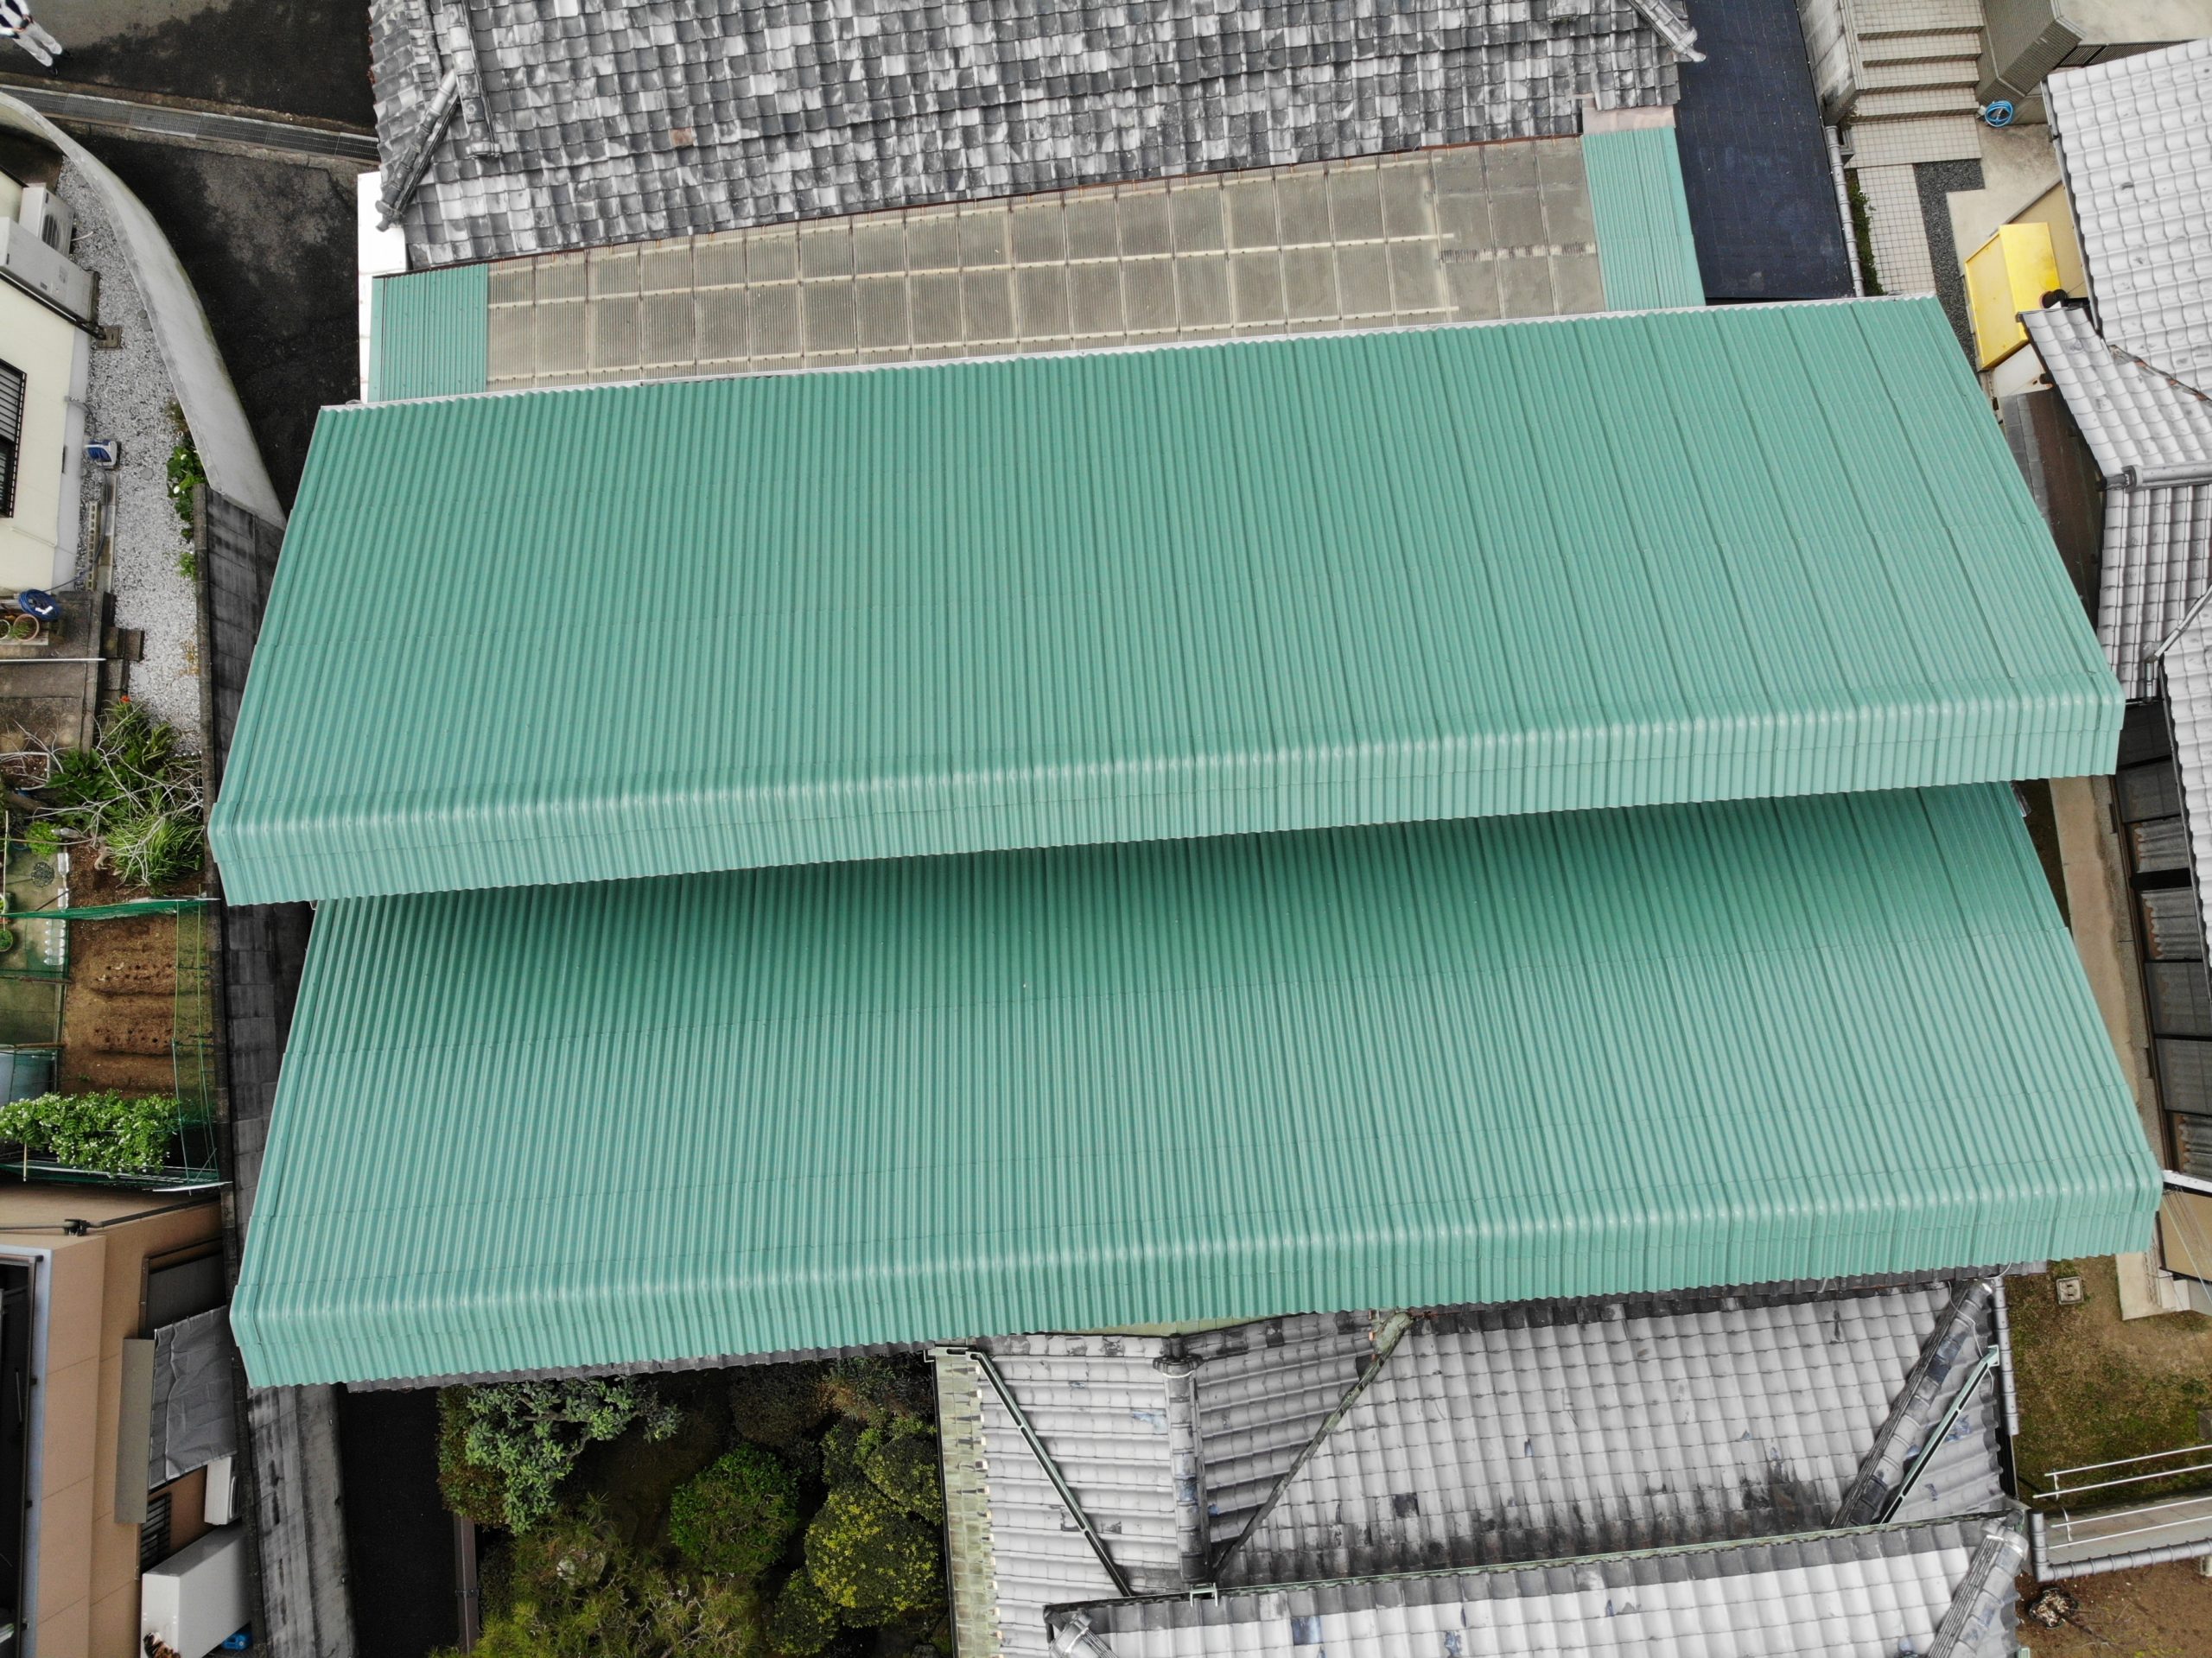 和泉市の外壁塗装・屋根塗装専門店ロードリバース